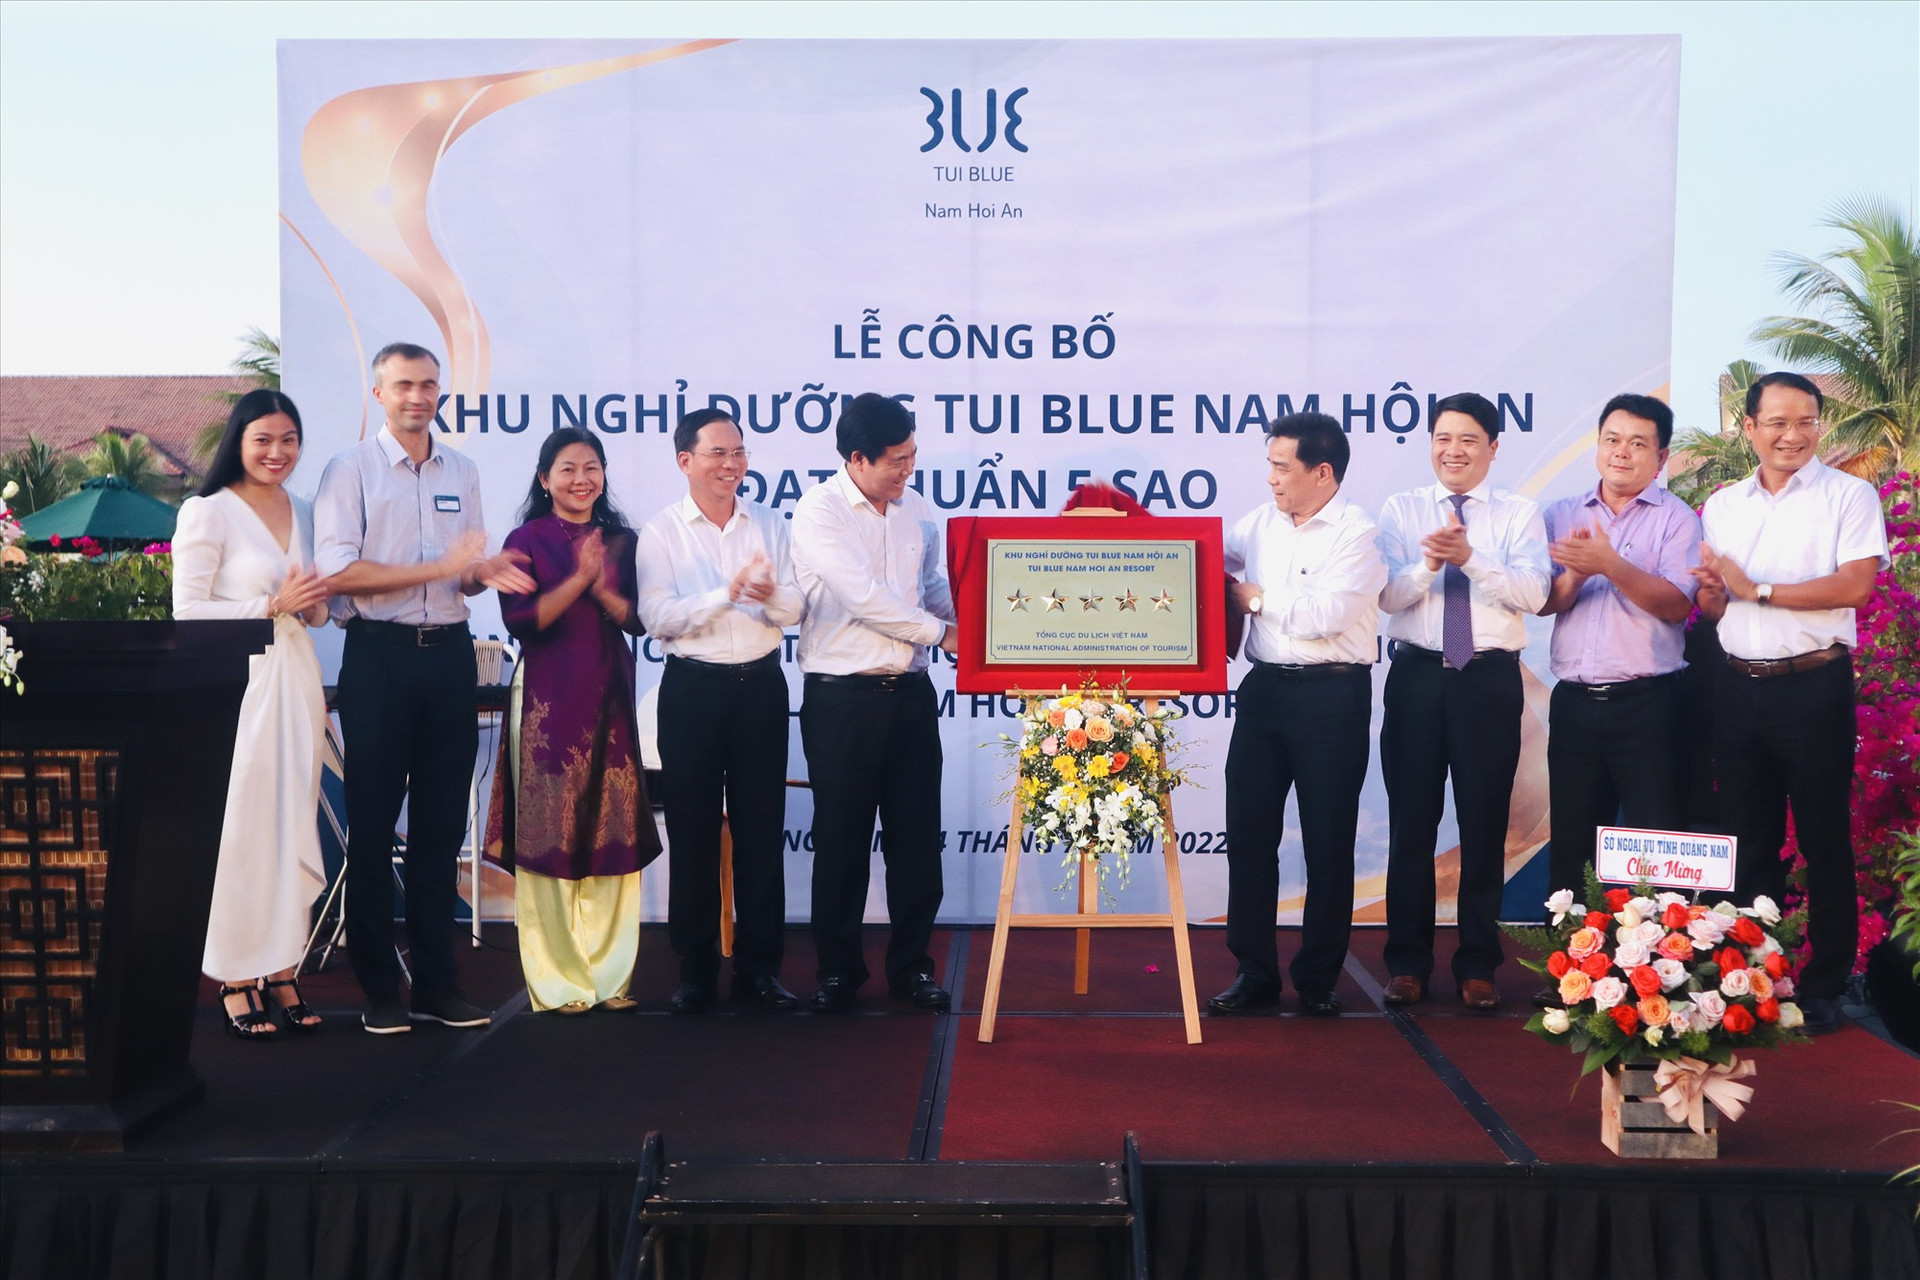 TUI Blue Nam Hoi An là khu nghỉ dưỡng đầu tiên đạt chuẩn 5 sao ở khu vực nam Quảng Nam. Ảnh: Q.T